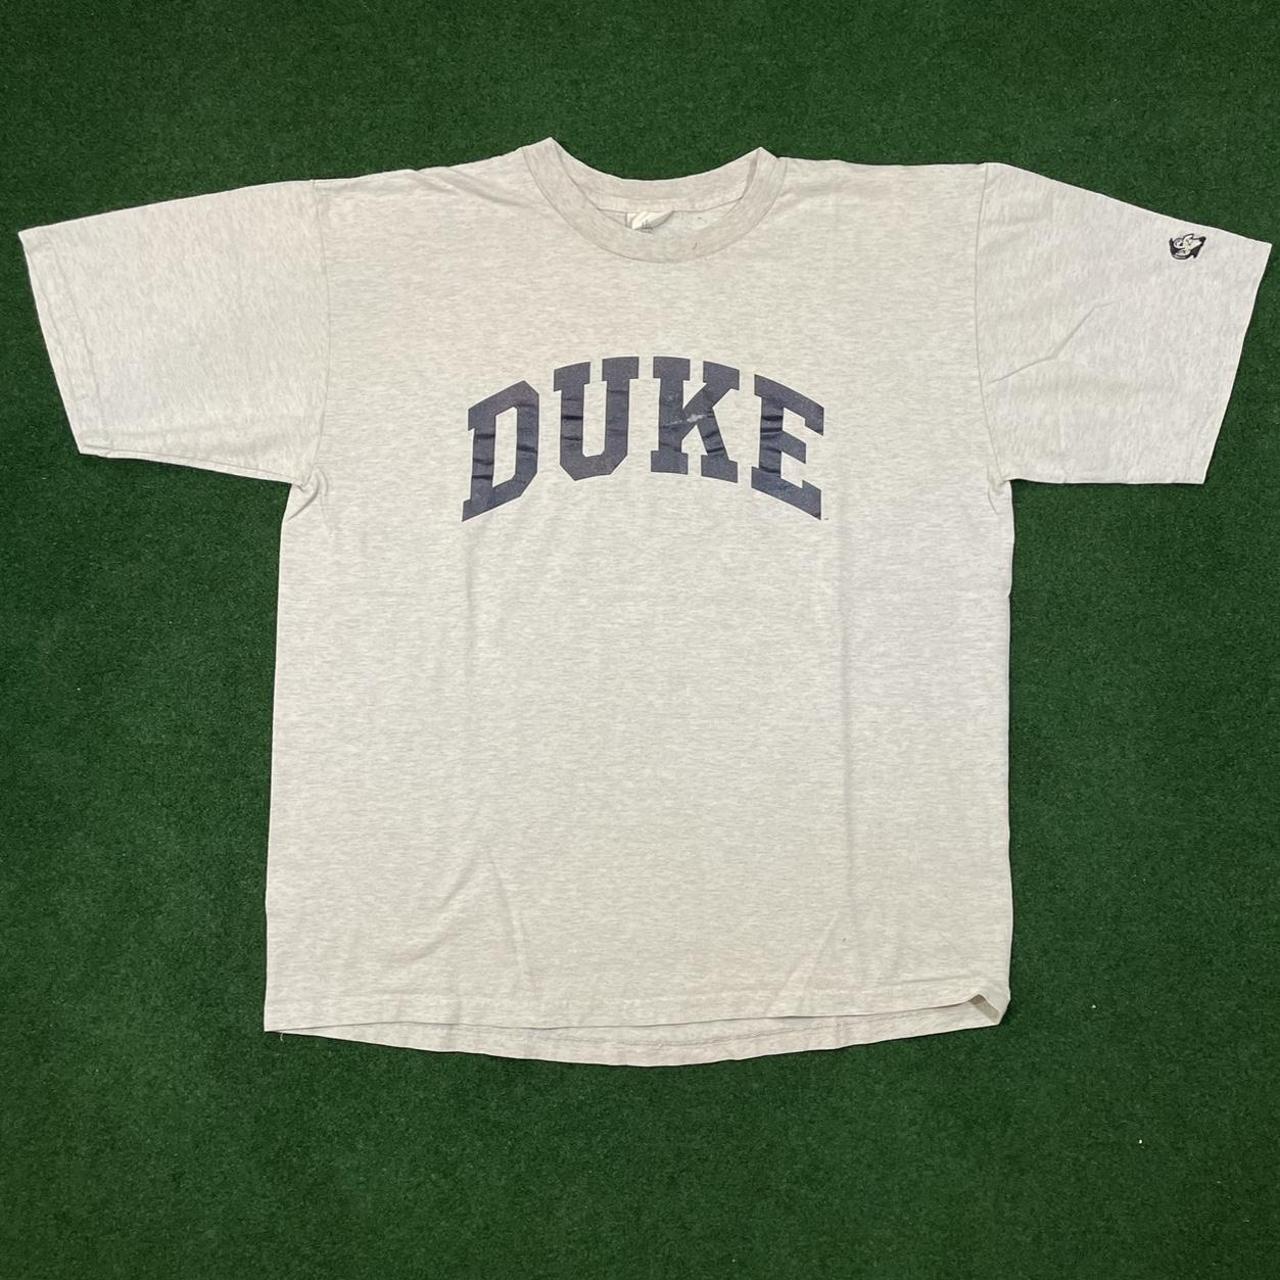 Duke Men's Grey and Navy T-shirt